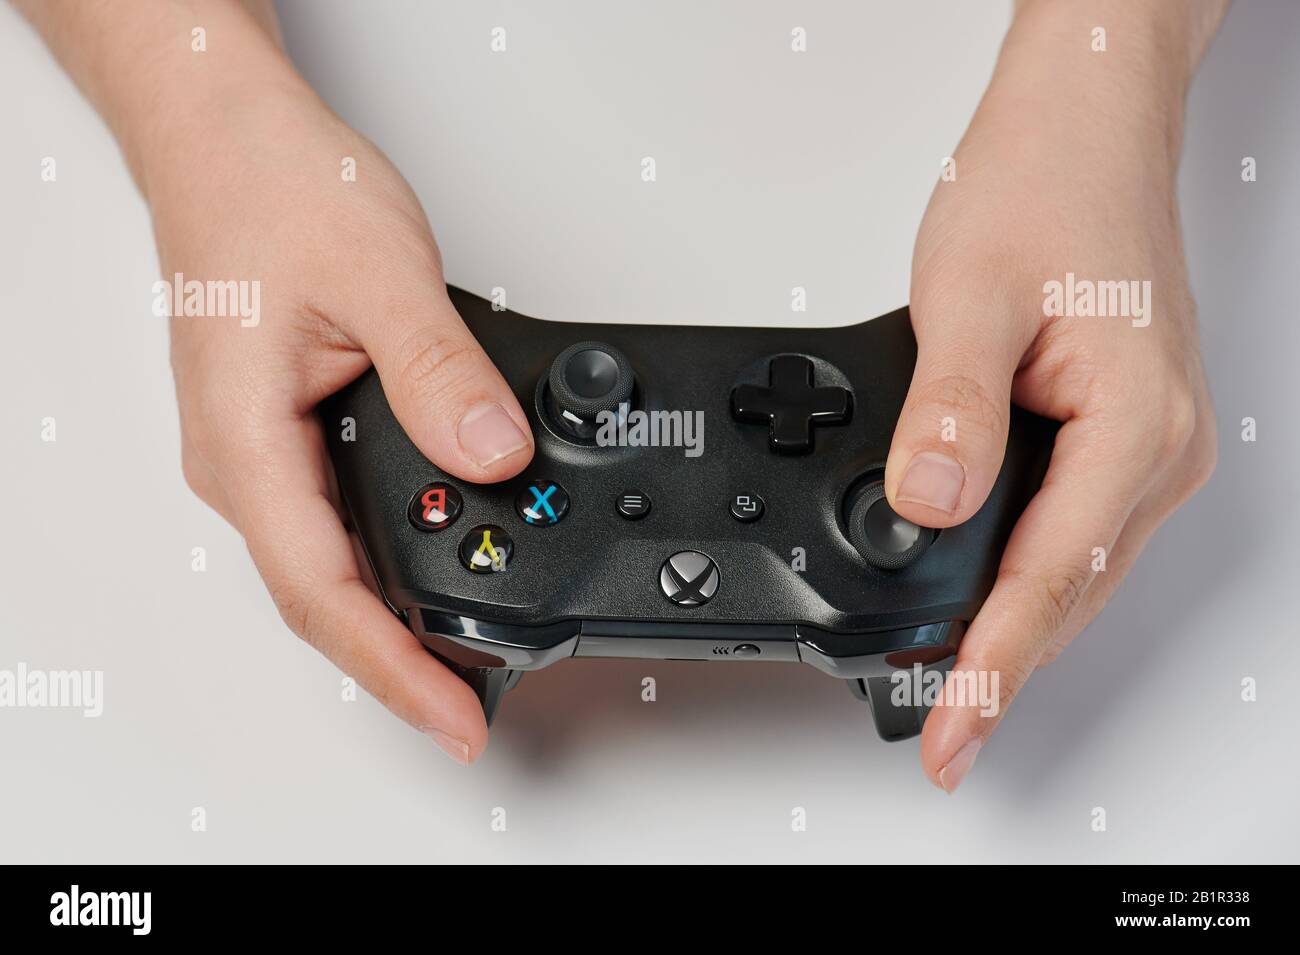 New-York , EE.UU. - 11 de febrero de 2020: Xbox negro un controlador en la mano de cerca de la vista aislada Foto de stock